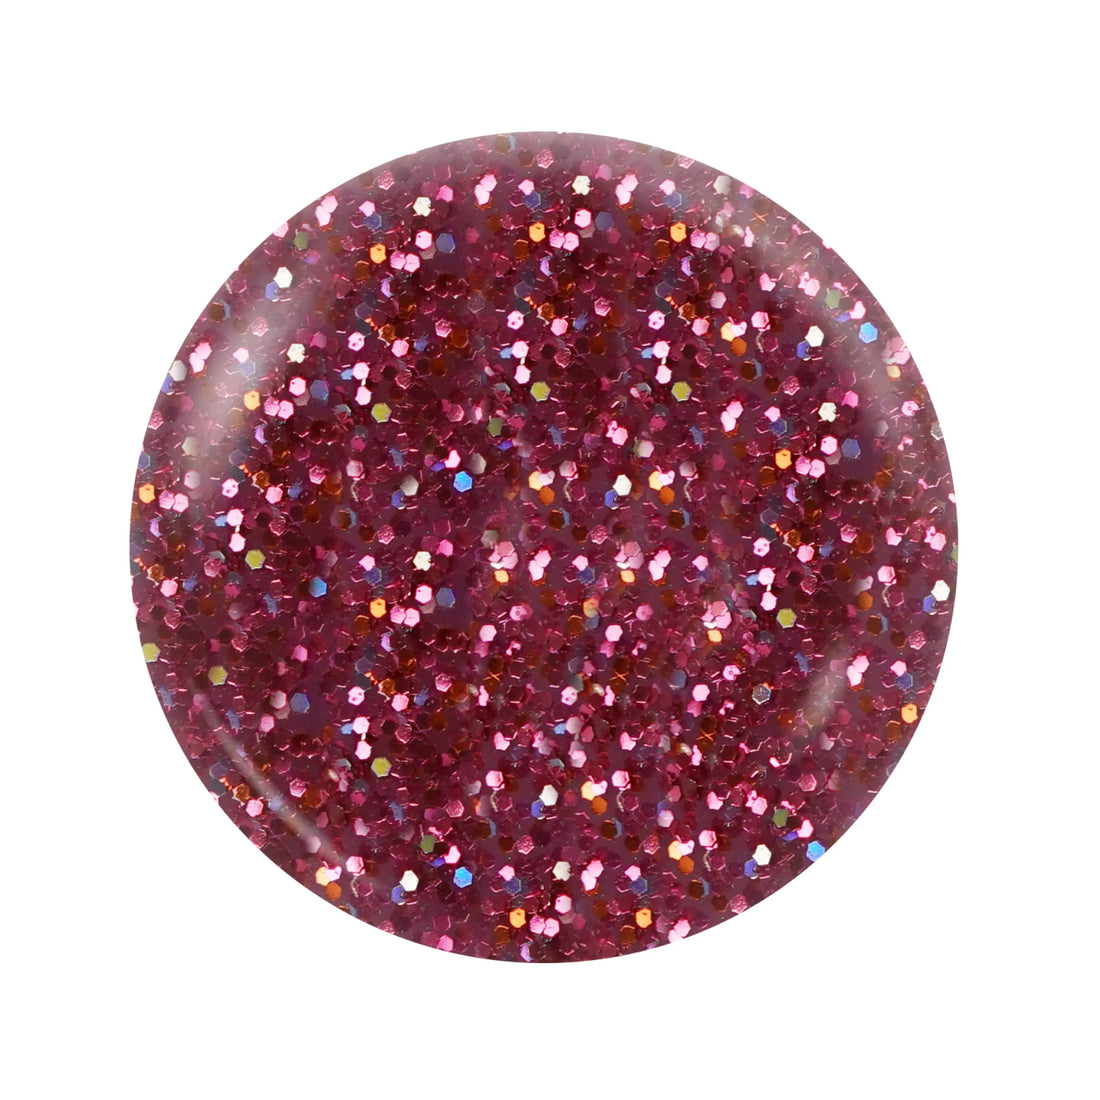 OG 175 - Notpolish Pink Stars